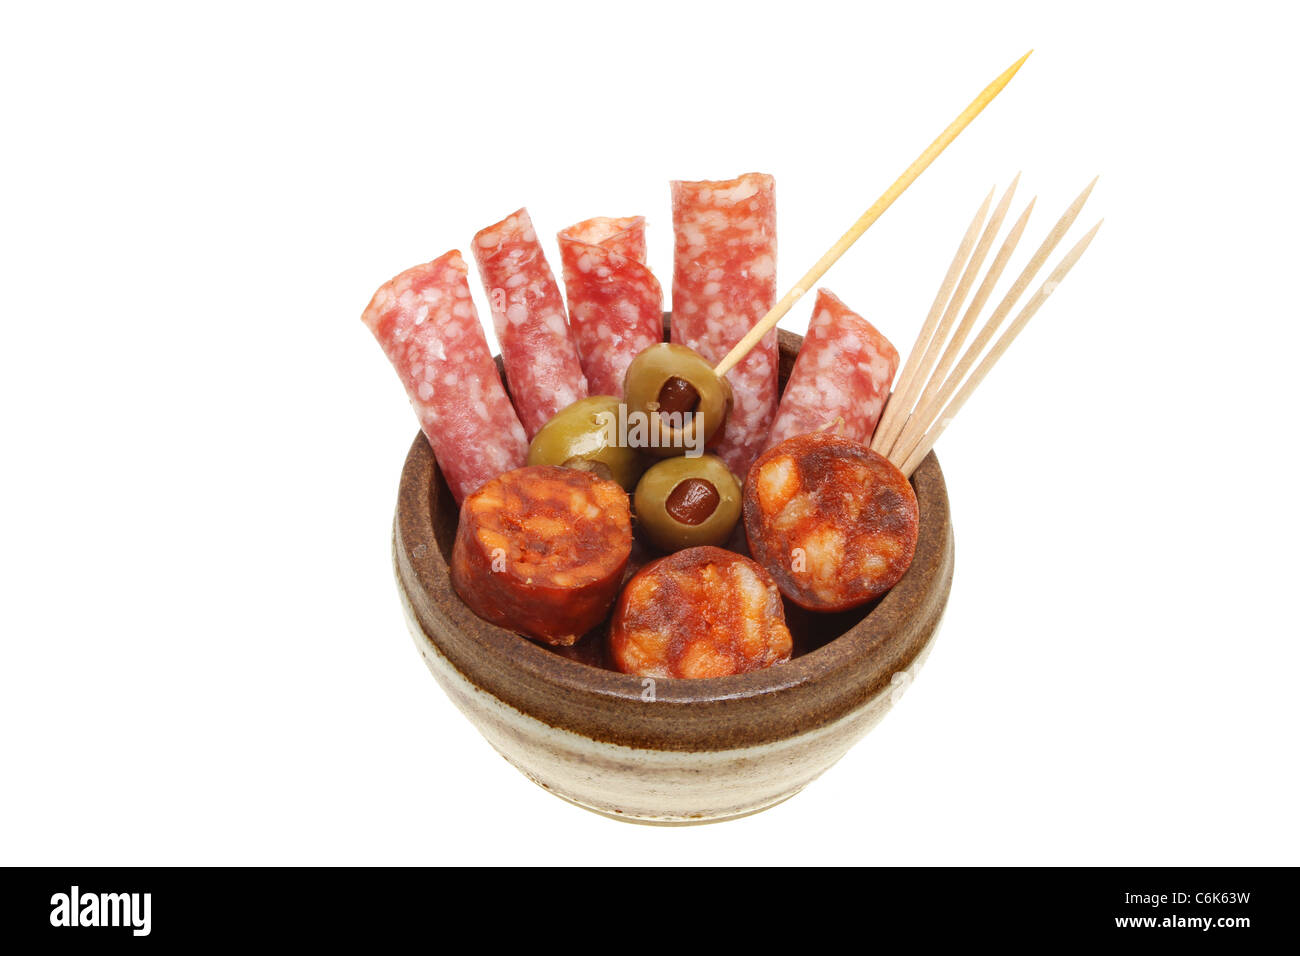 Salami und Chorizo Wurst in einer Schüssel mit gefüllten Oliven und cocktail-sticks Stockfoto